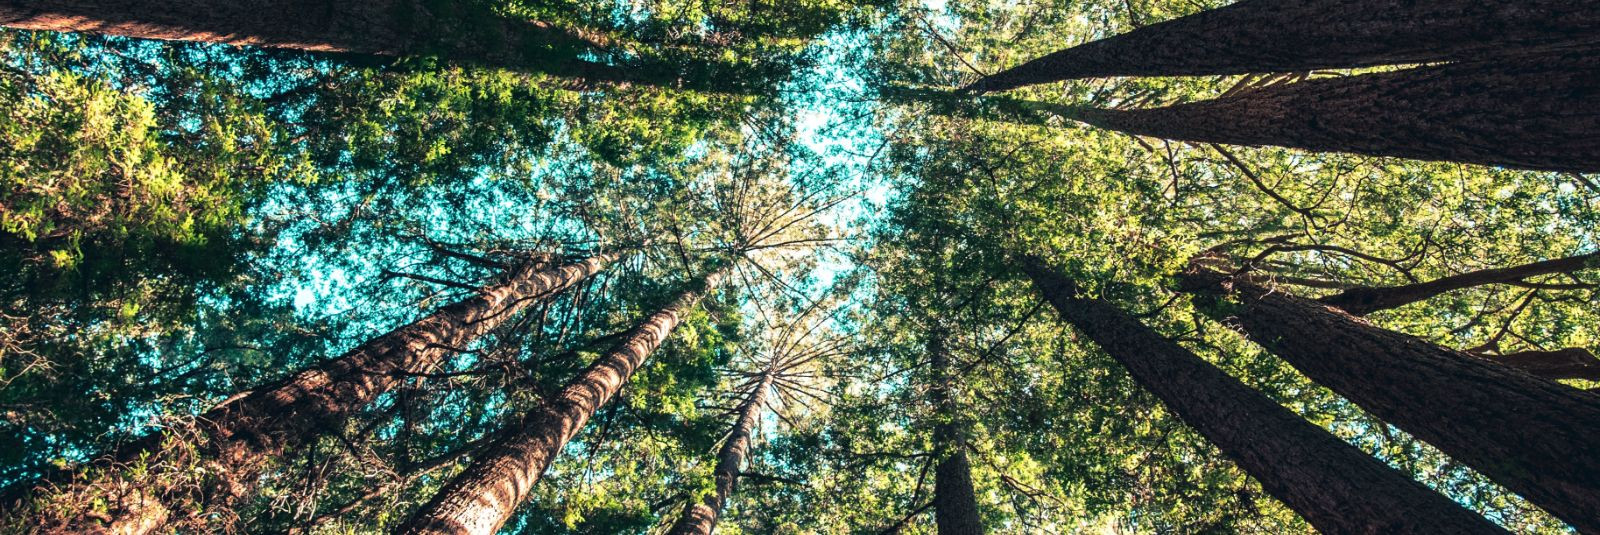 Metsamajandus ja keskkonnahoid on kaks omavahel seotud eesmärki, mis vajavad hoolikat tasakaalustamist. Õigesti teostatud metsamajandus võib toetada nii loodusl